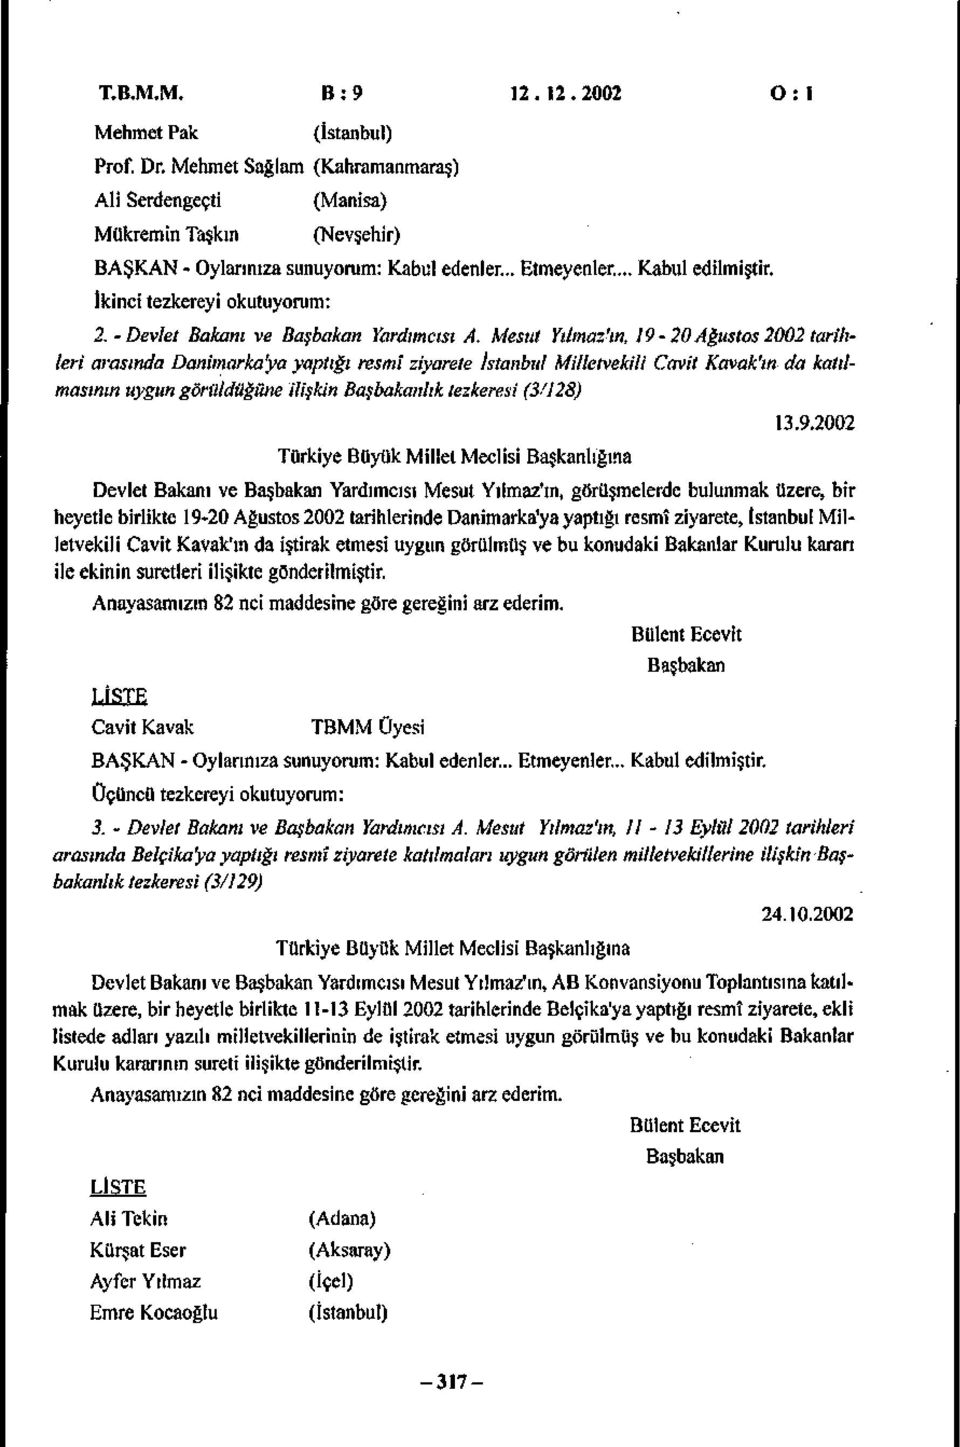 Mesut Yılmaz'ın, 19-20Ağustos2002 tarihleri arasında Danimarka'ya yaptığı resmî ziyarete İstanbul Milletvekili Cavit Kavak'ın da katılmasının uygun görüldüğüne ilişkin Başbakanlık tezkeresi (3'128)